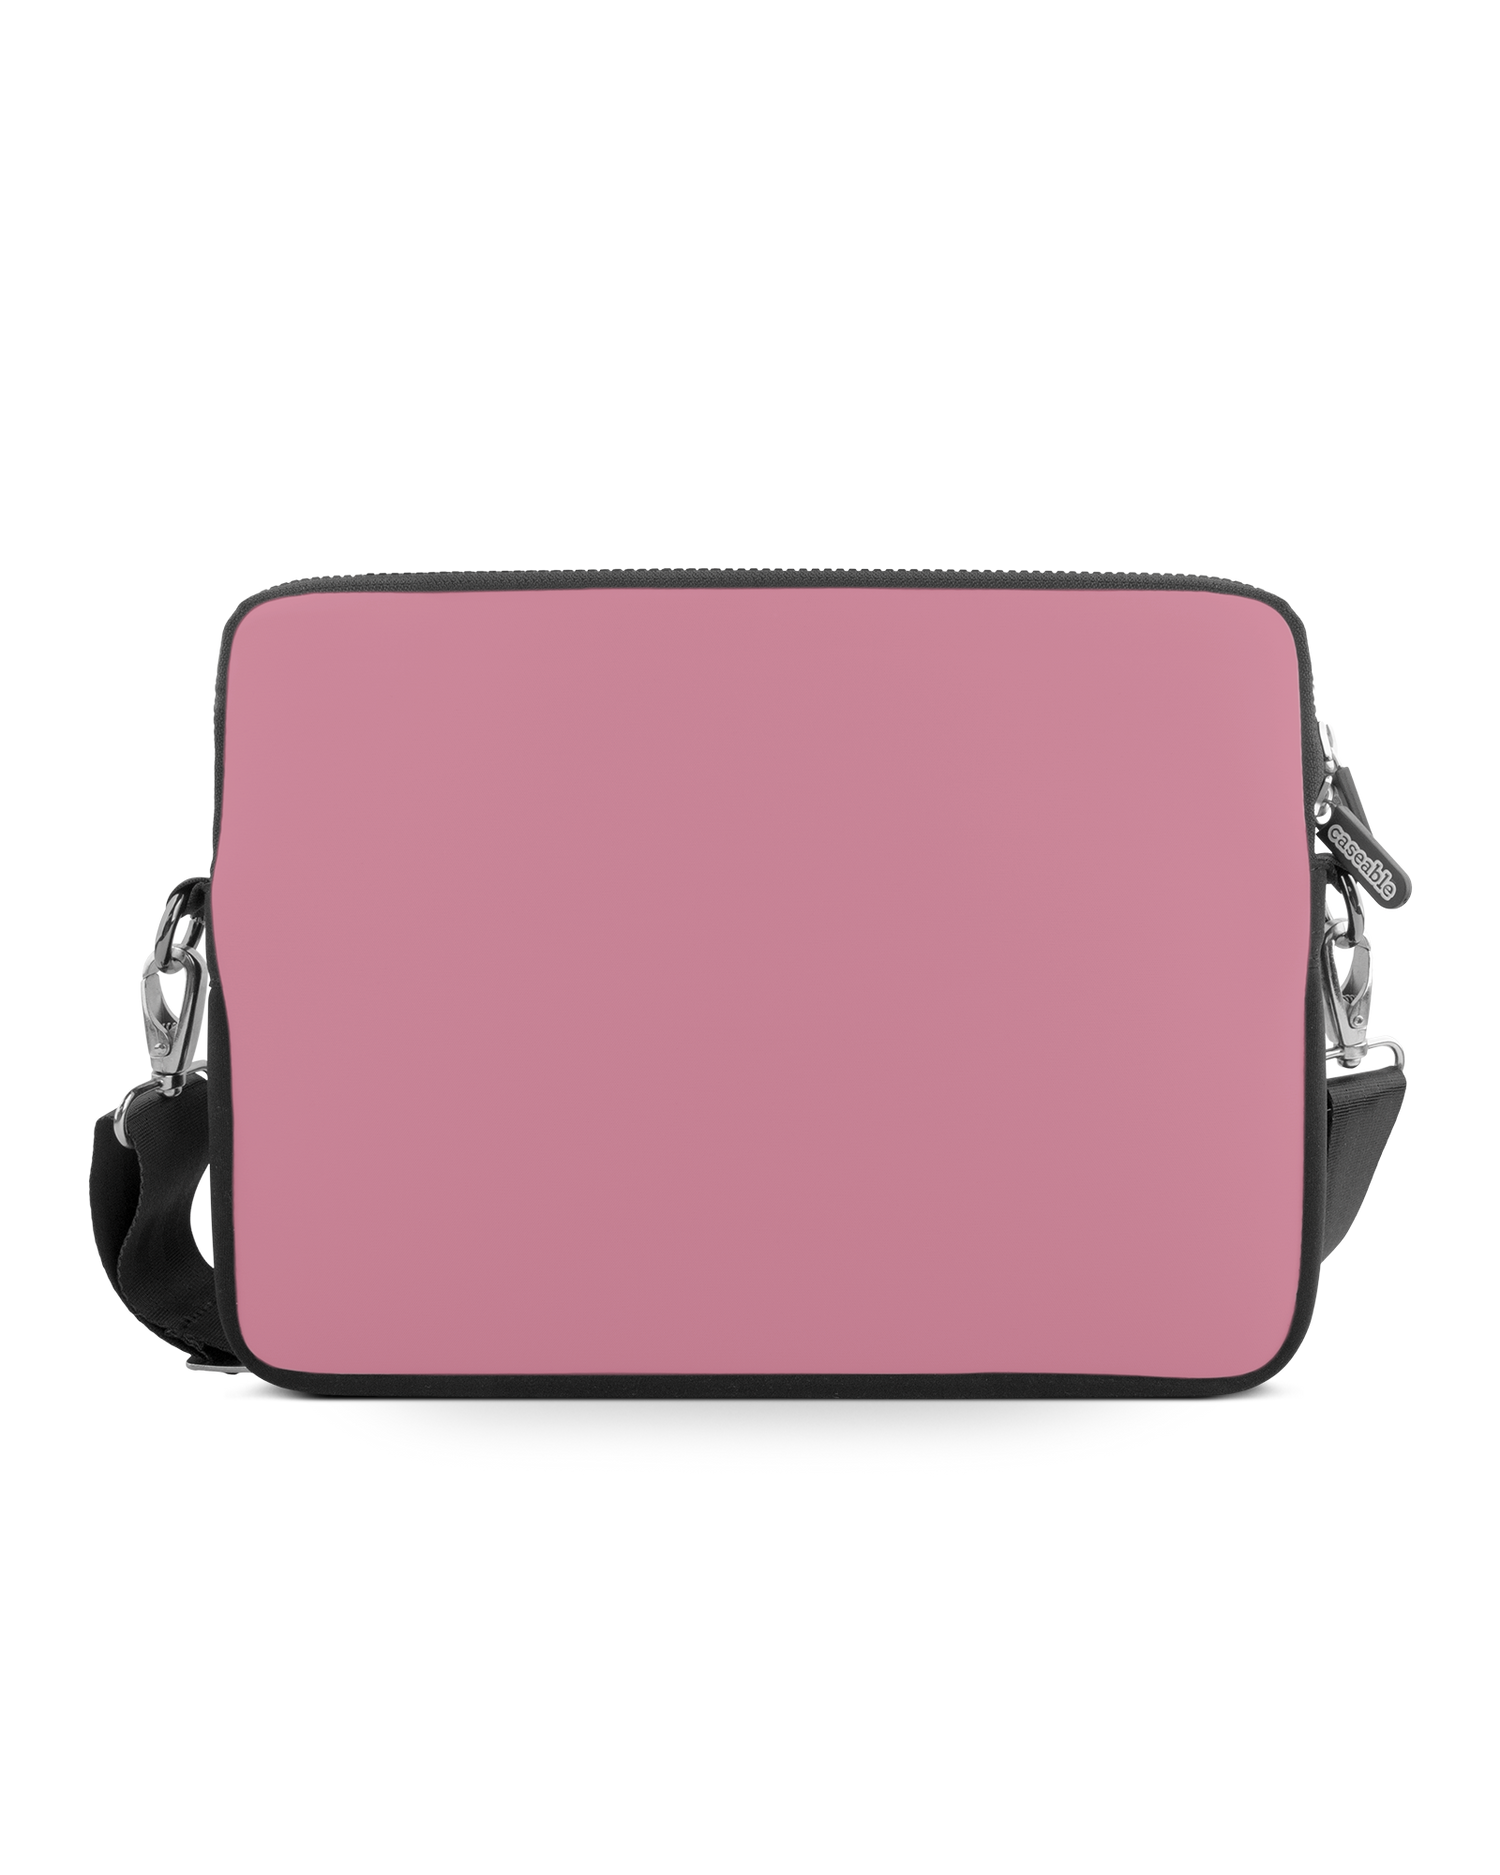 WILD ROSE Premium Laptoptasche 15 Zoll: Vorderansicht